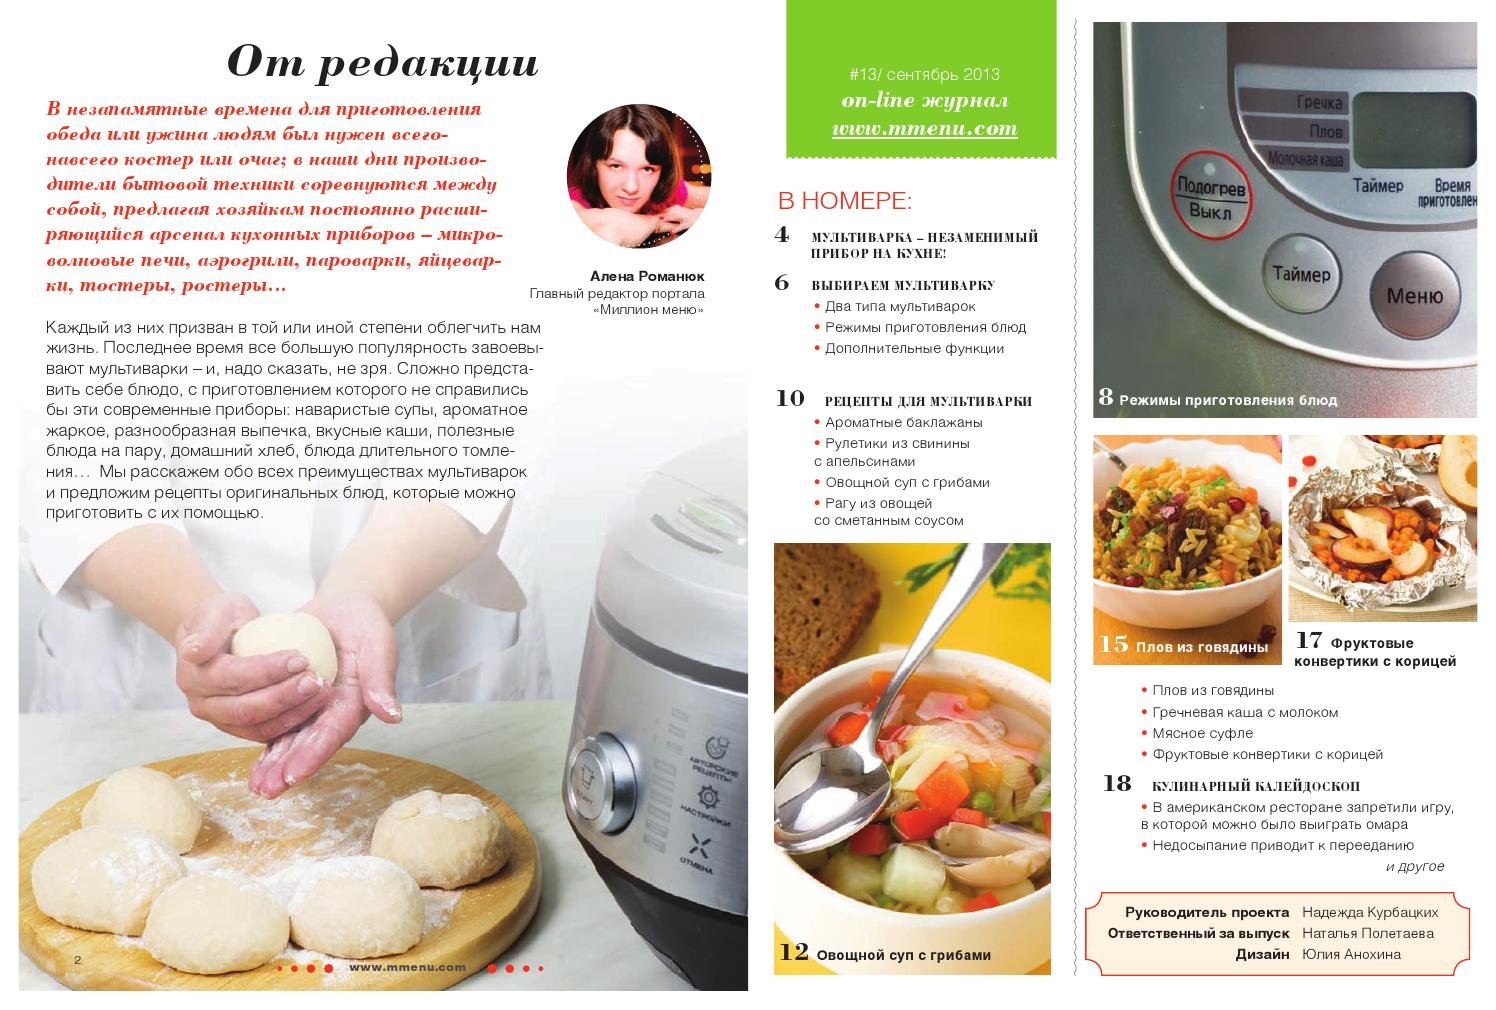 Как приготовить WOK дома правильно: лучшие рецепты азиатских блюд — Блог Покупон